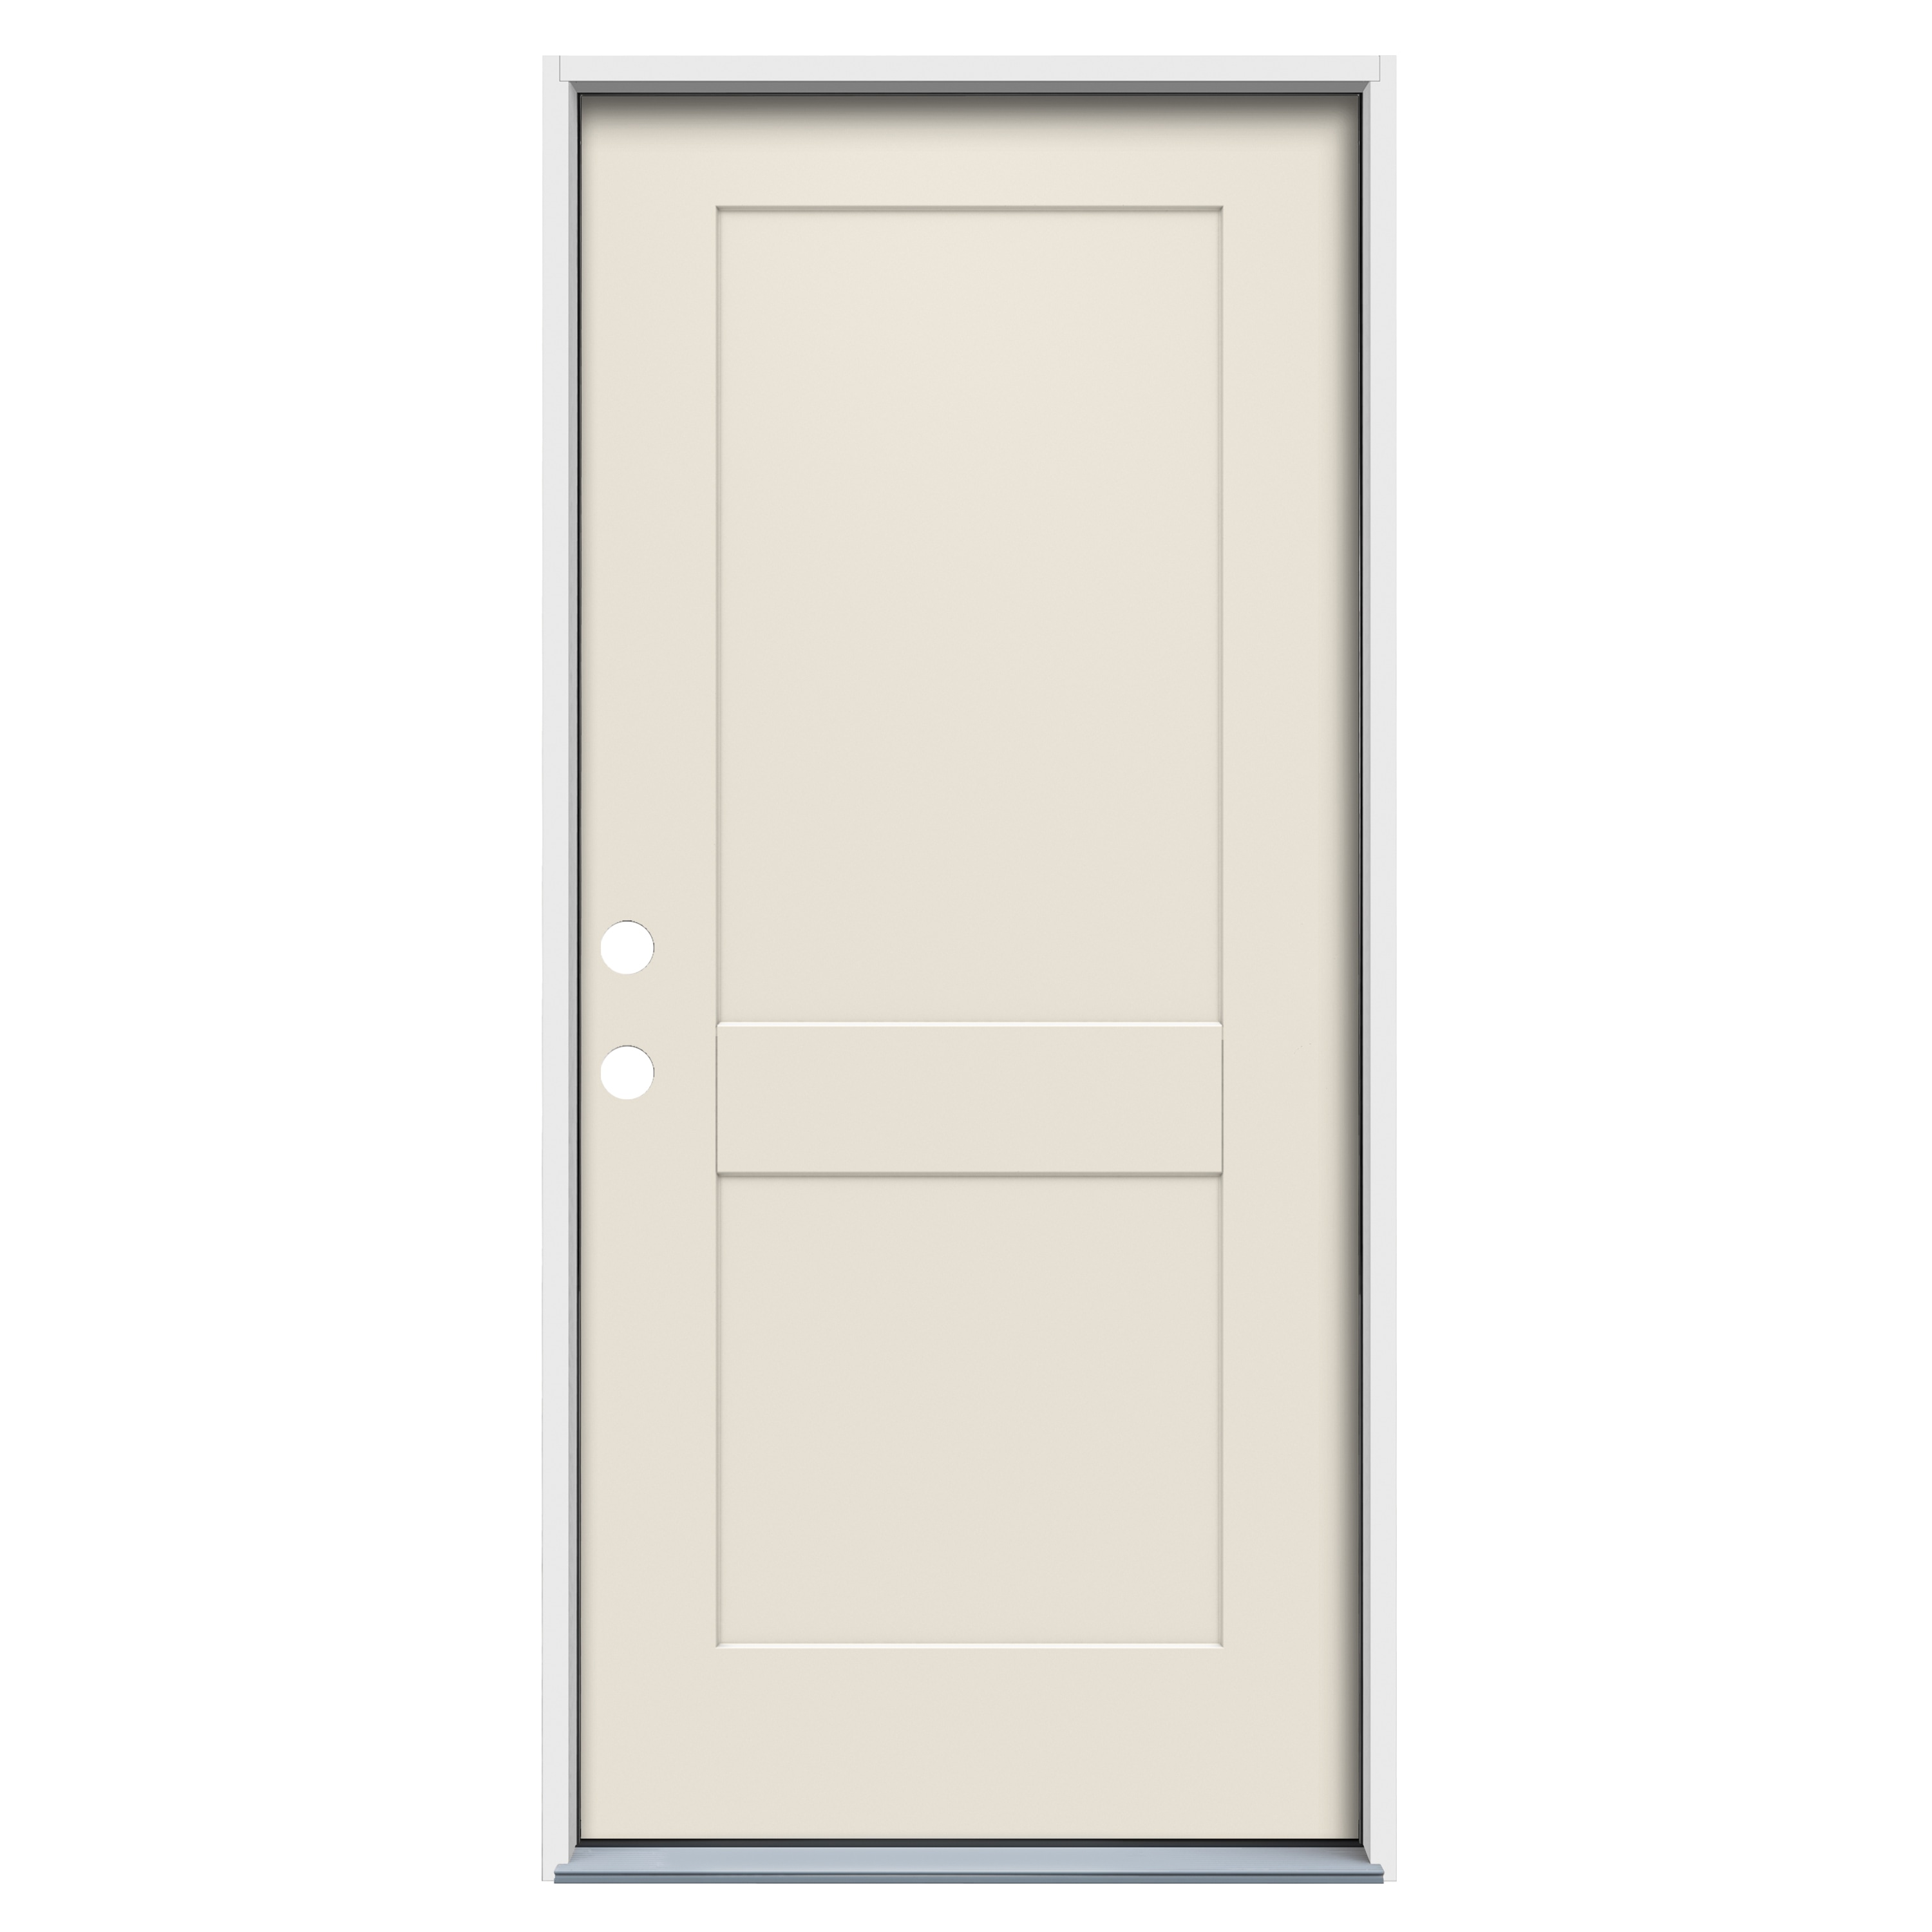 Cambridge 1/2 Oval Exterior Door - Builders Door Outlet